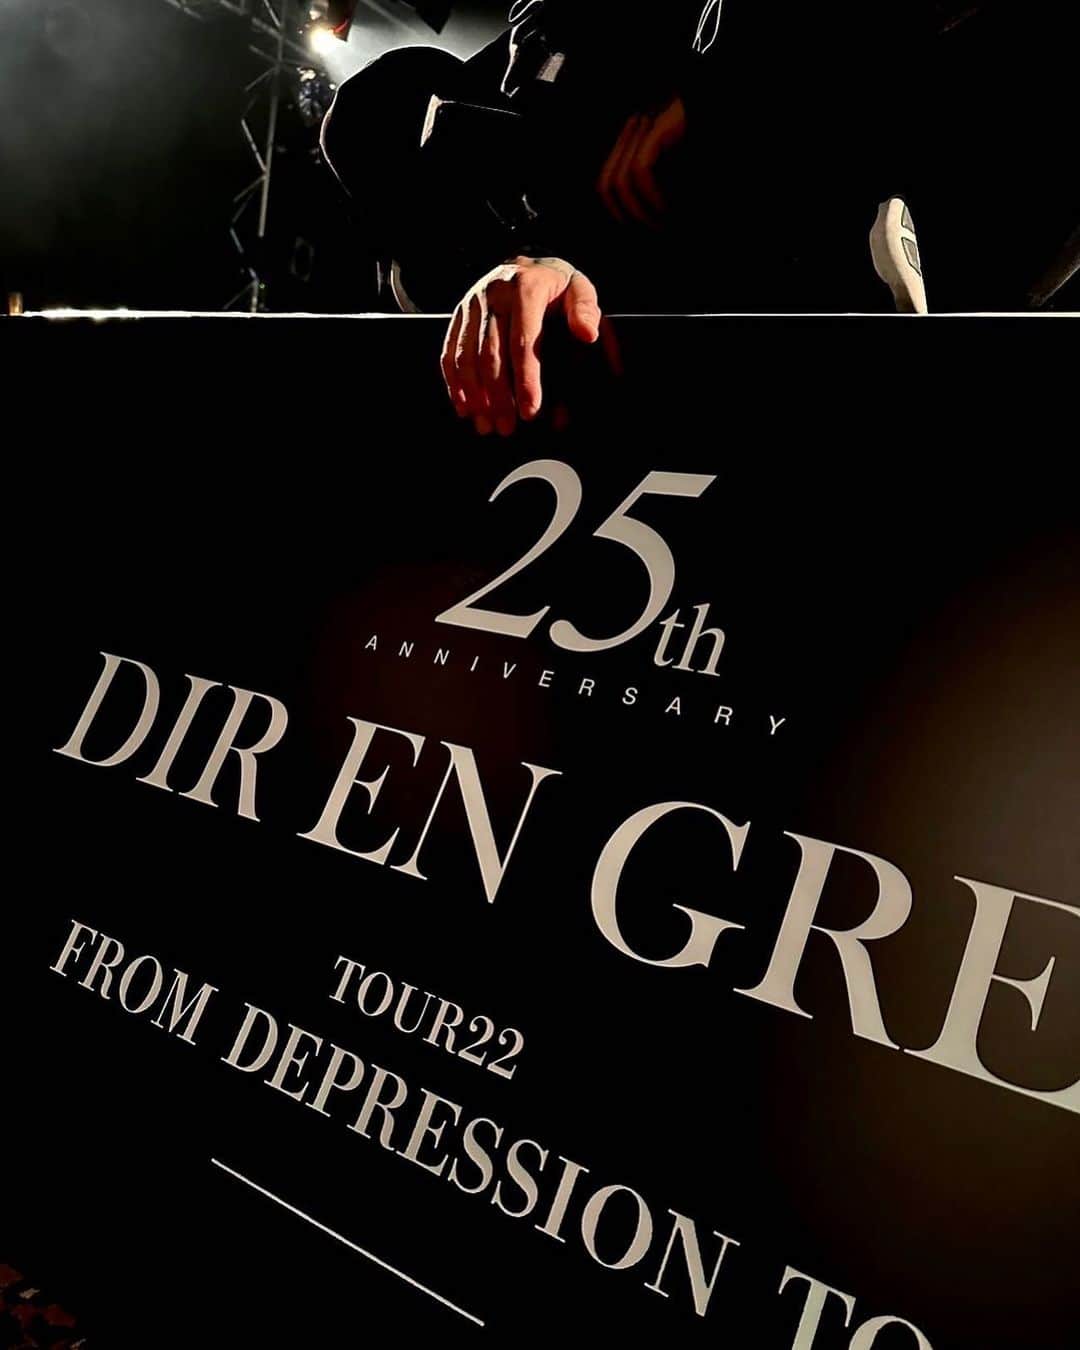 DIR EN GREY/TOUR23 PHALARIS -Vol.II- - ミュージック